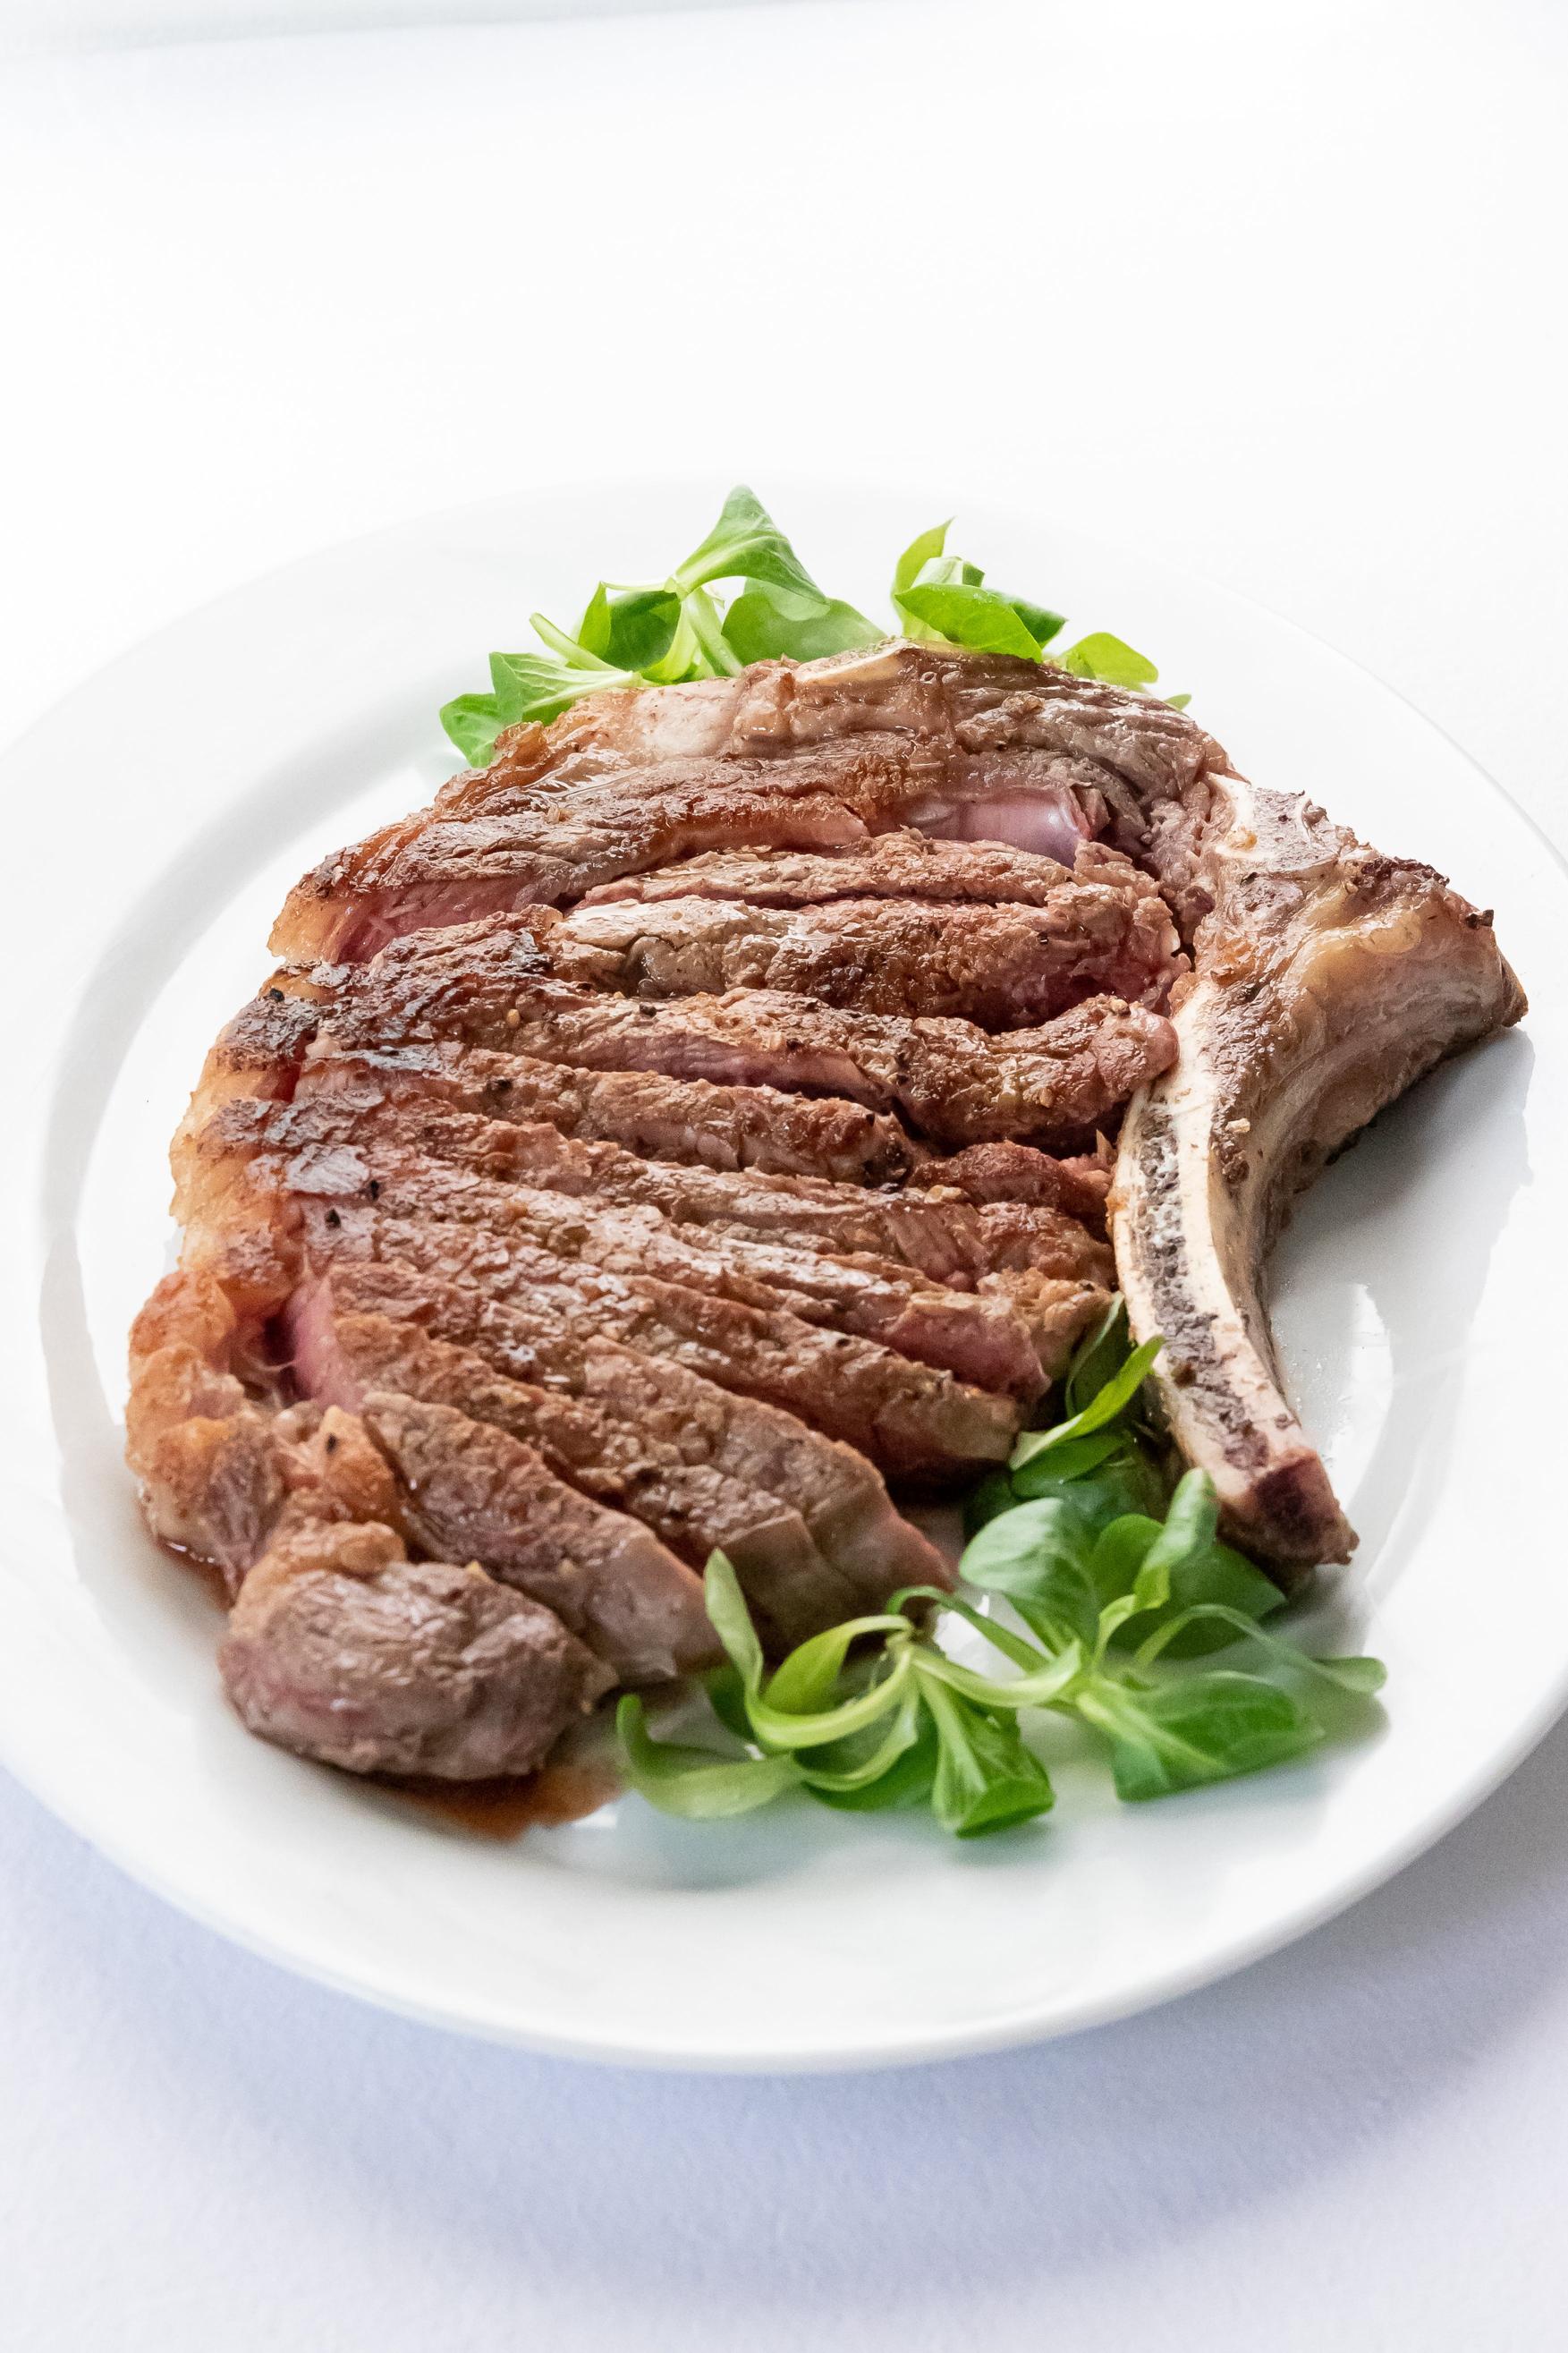 Wybór odpowiedniego kawałka mięsa: jakie cechy powinien posiadać idealny stek